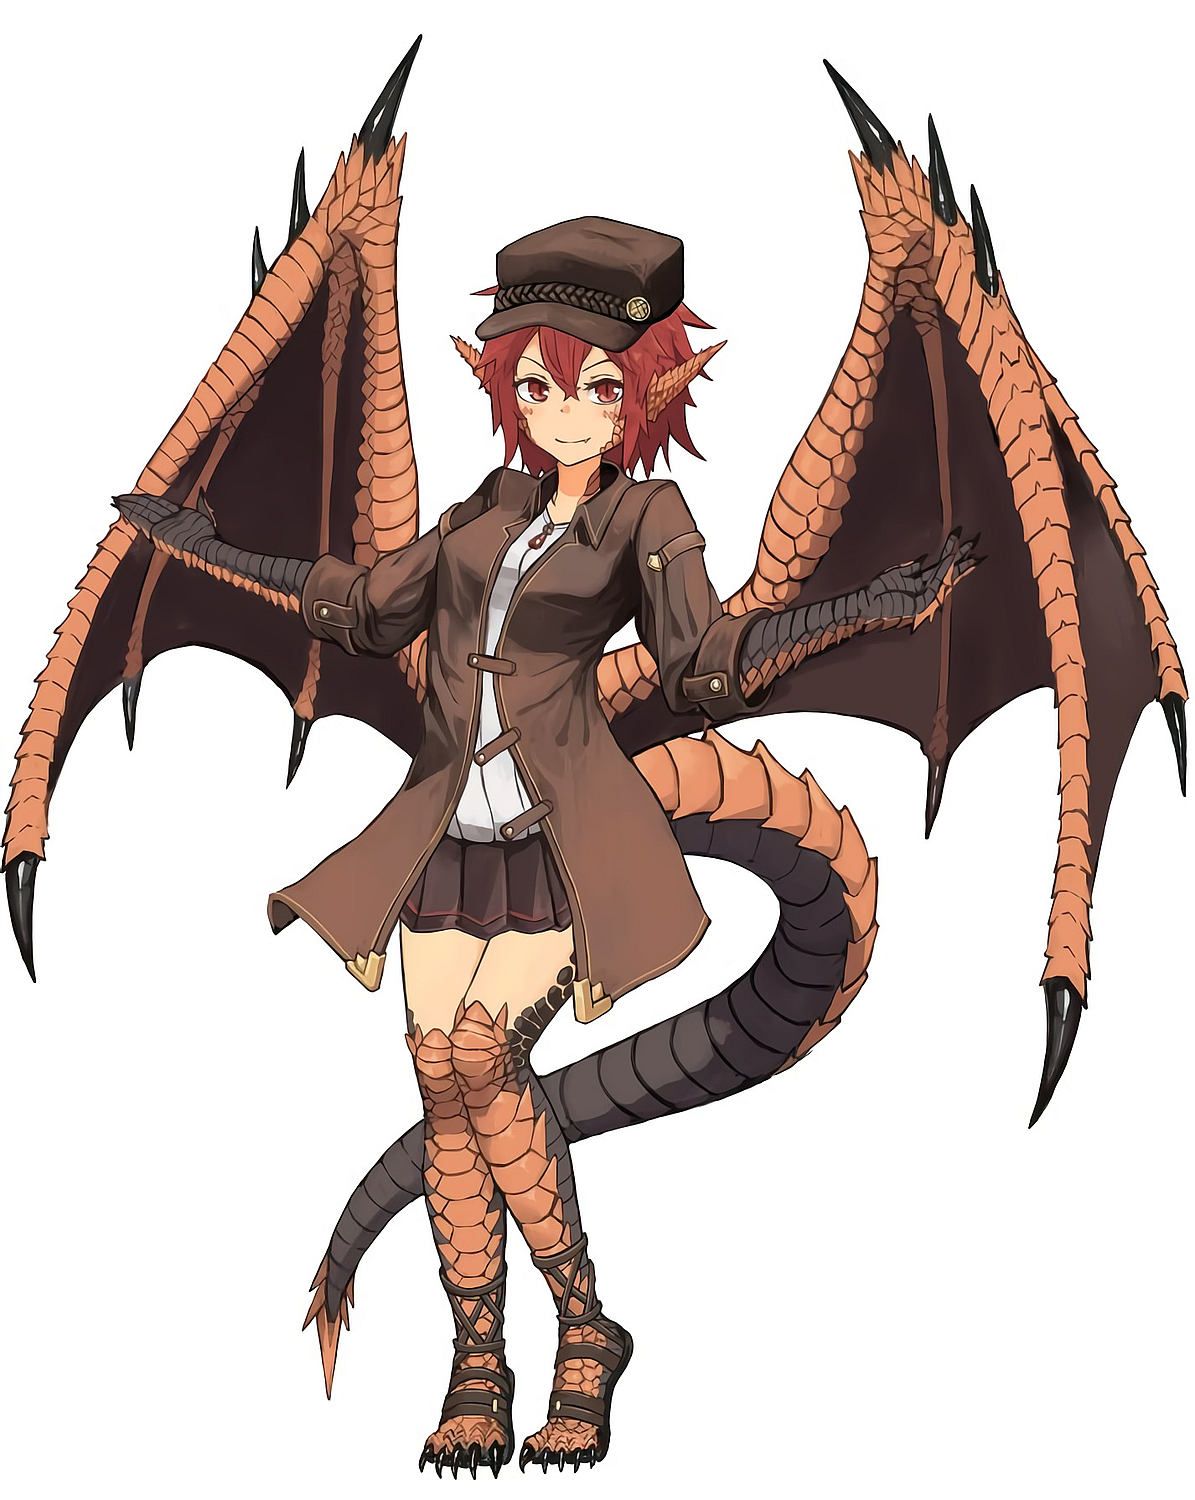 Kawai dragon girl: monster anime character Artist: Hitokuirou